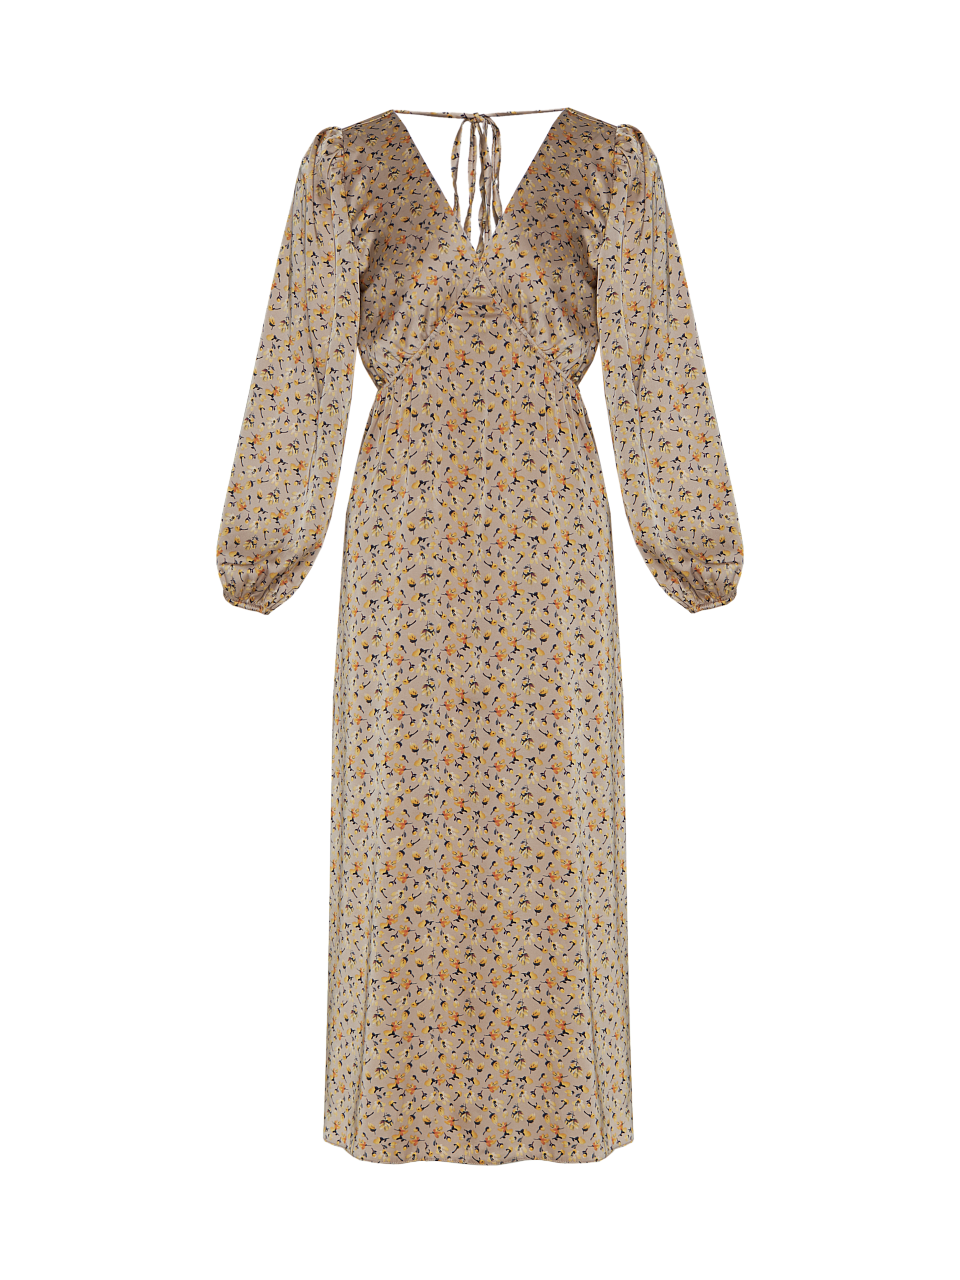 Жіноча сукня Stimma Урія, колір - Бежевий/жовта квітка